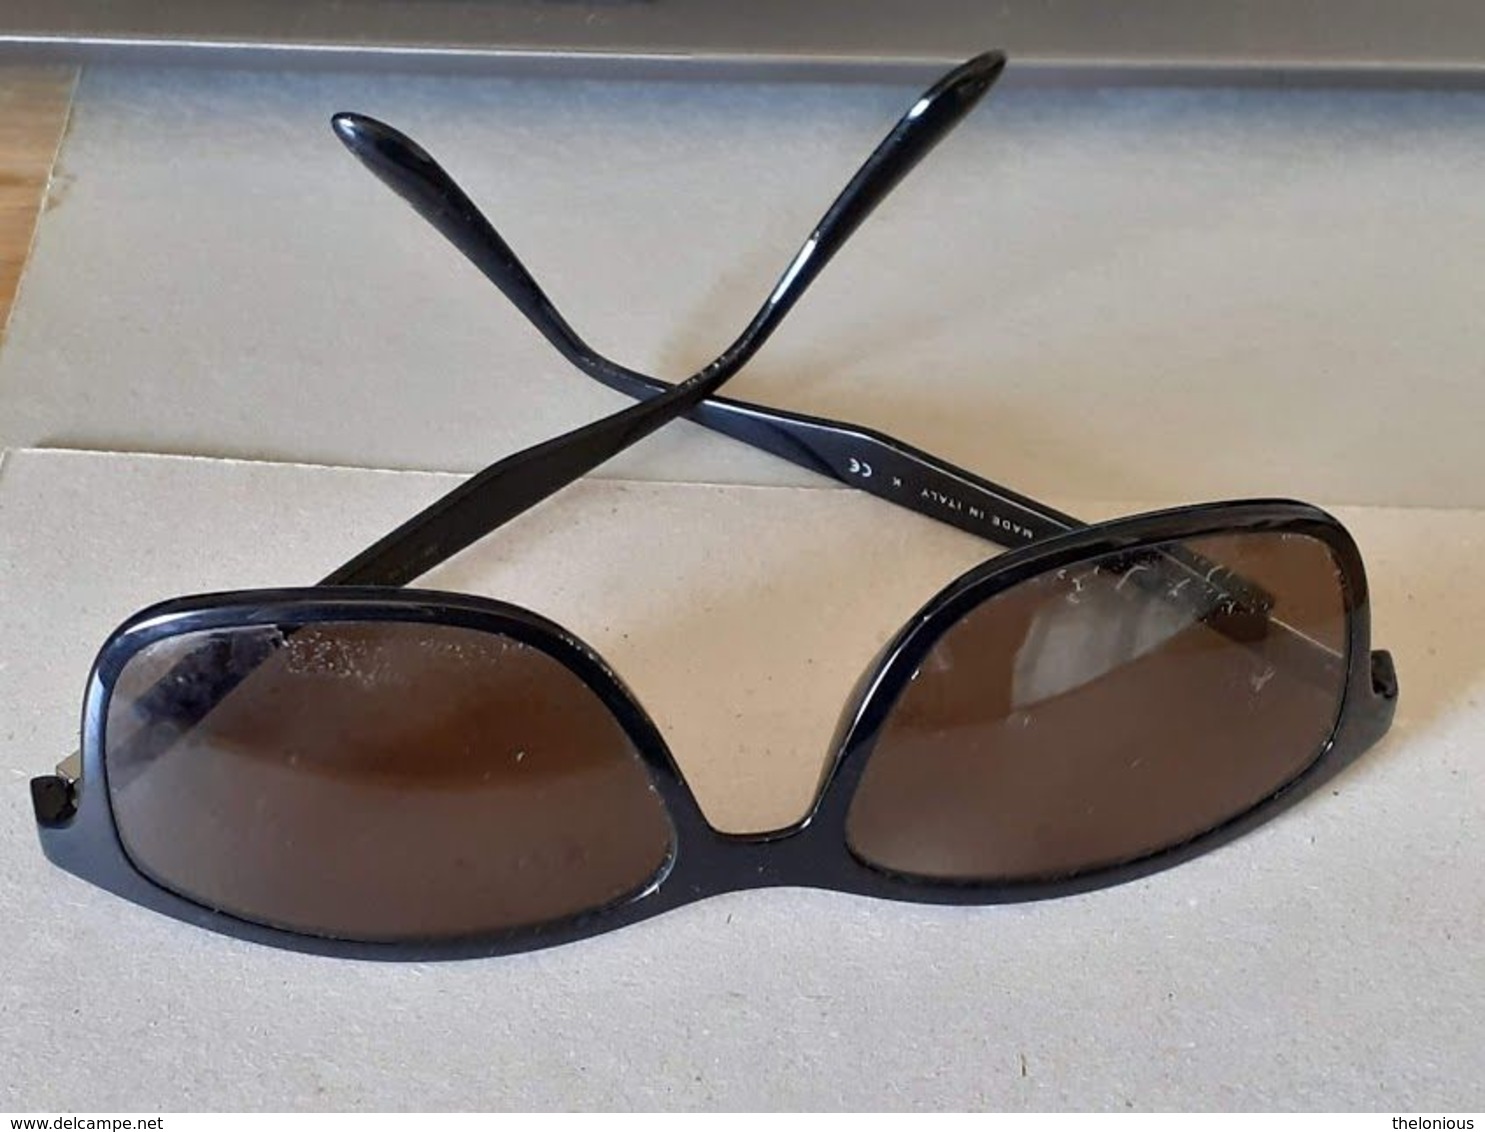 * Vintage montatura occhiali RayBan - le lenti presenti sono graduate e rovinate